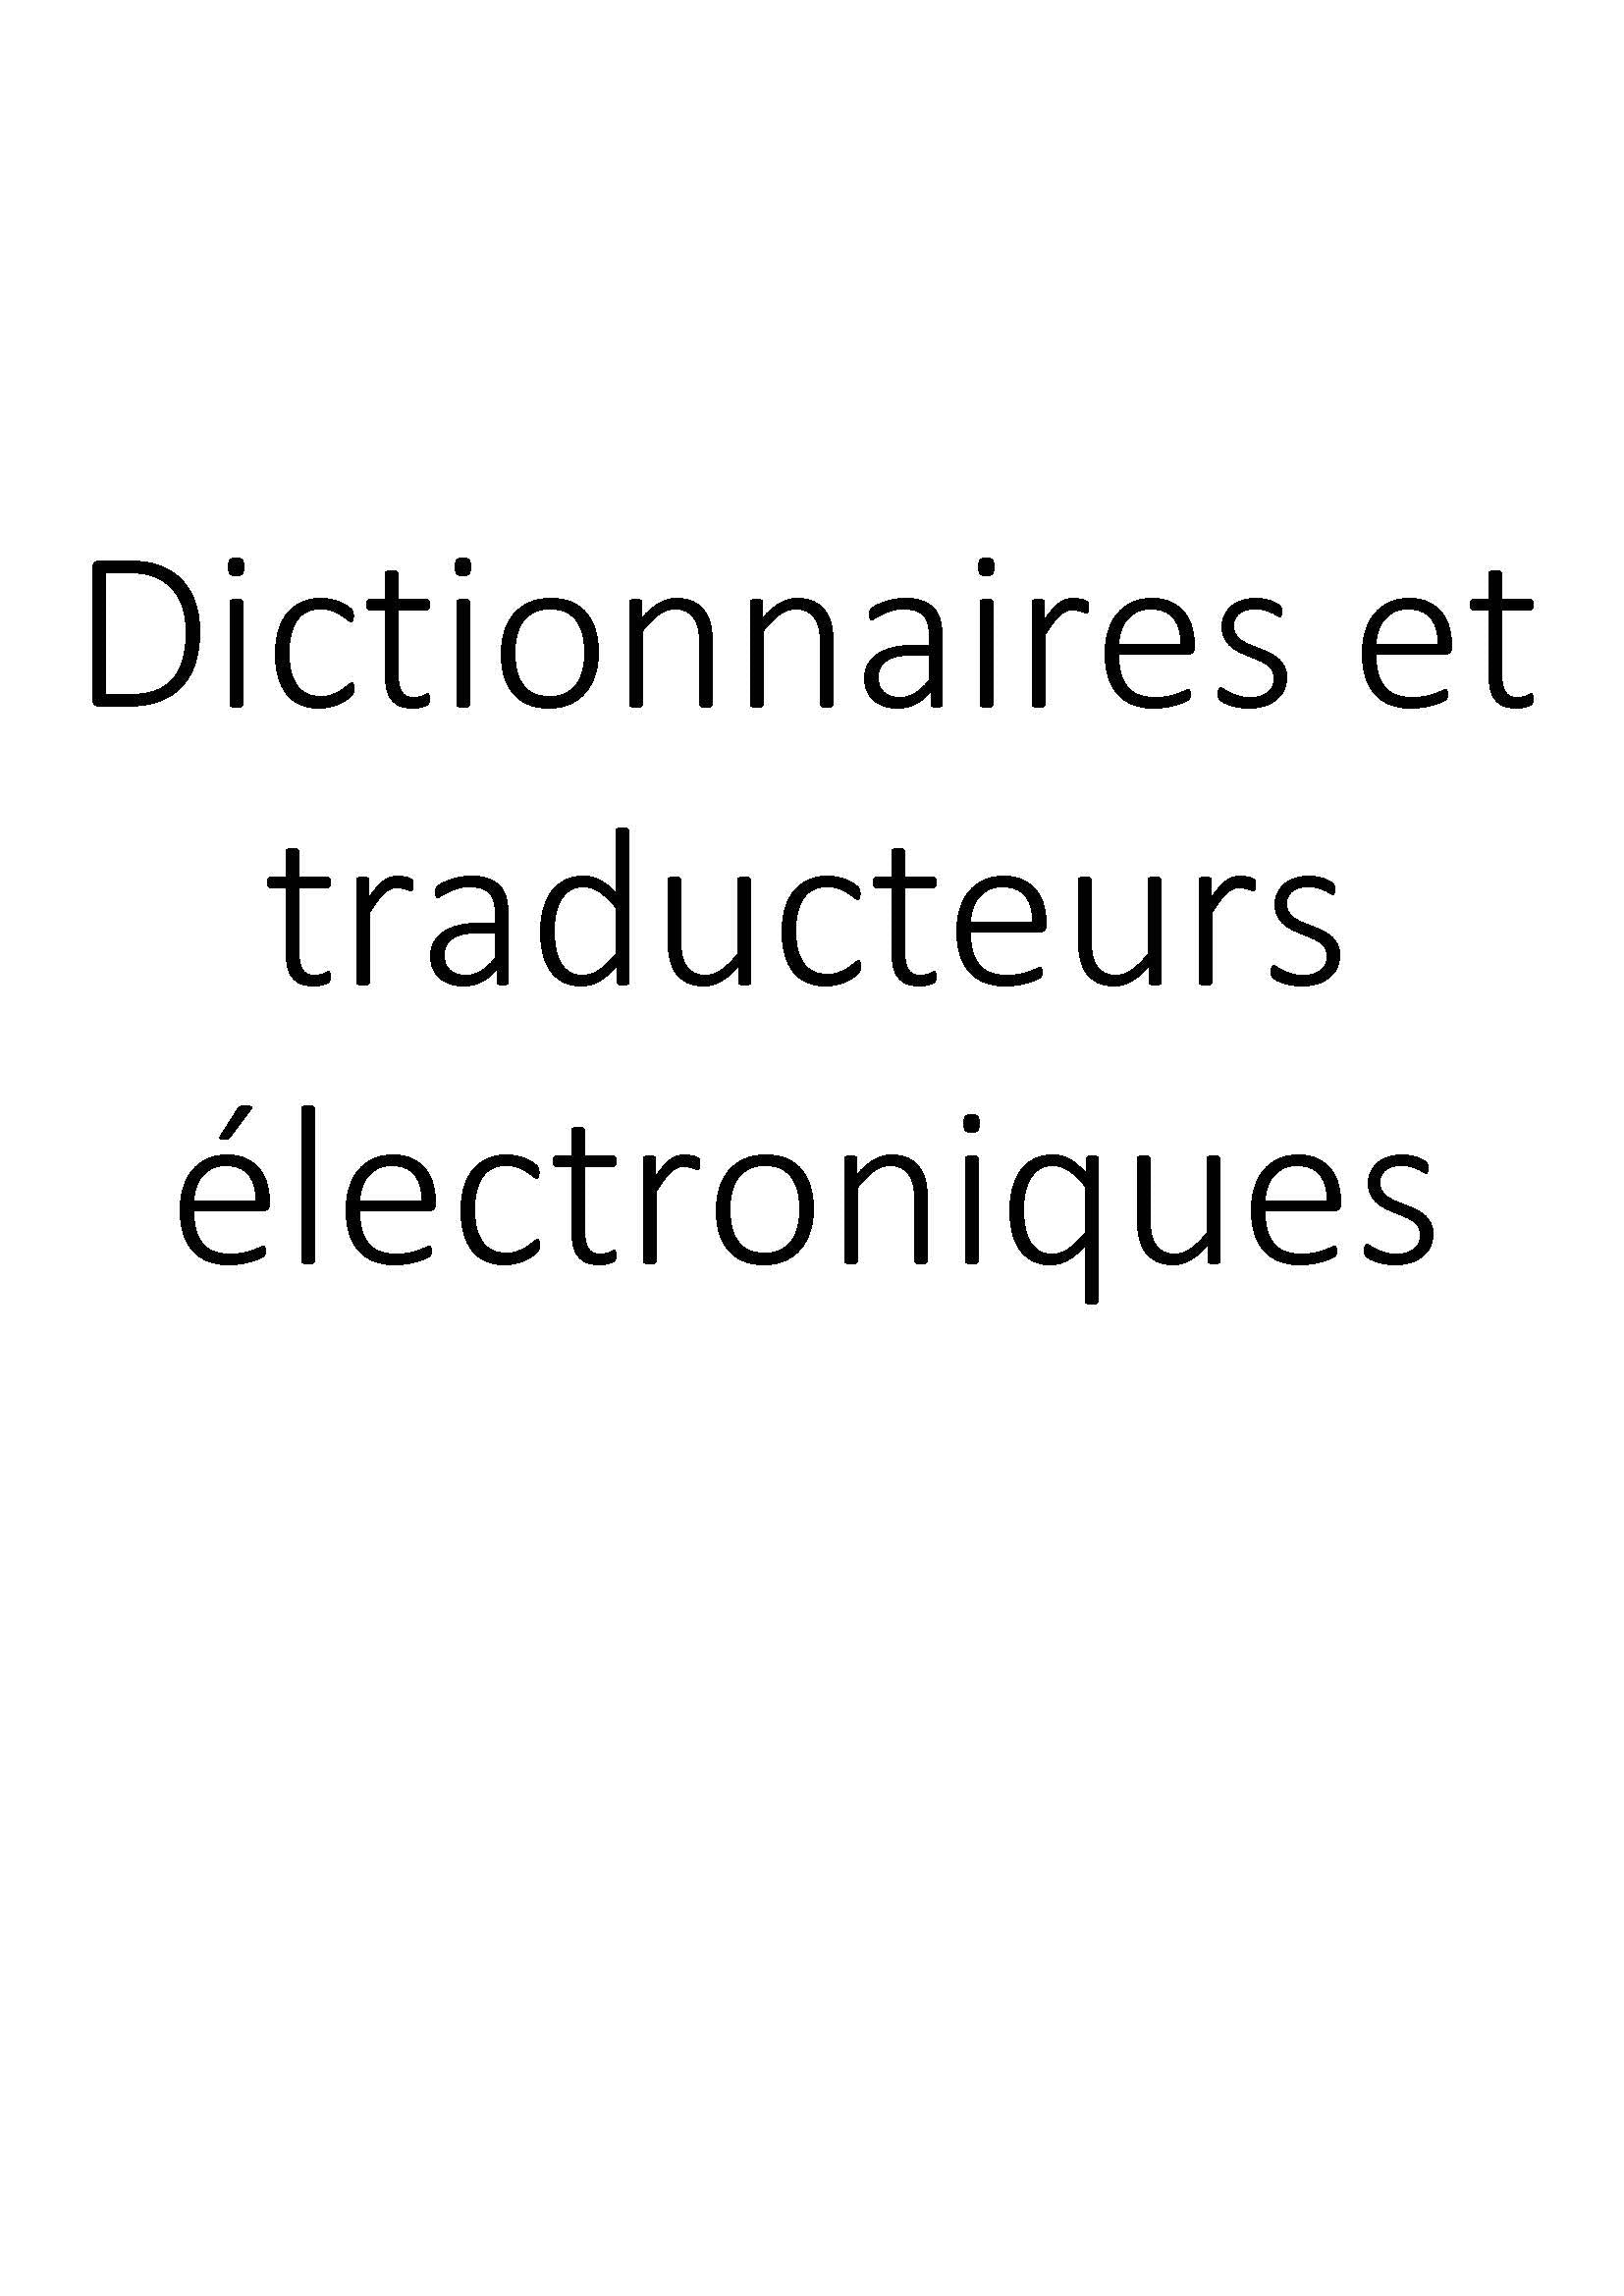 Dictionnaires et traducteurs électroniques clicktofournisseur.com